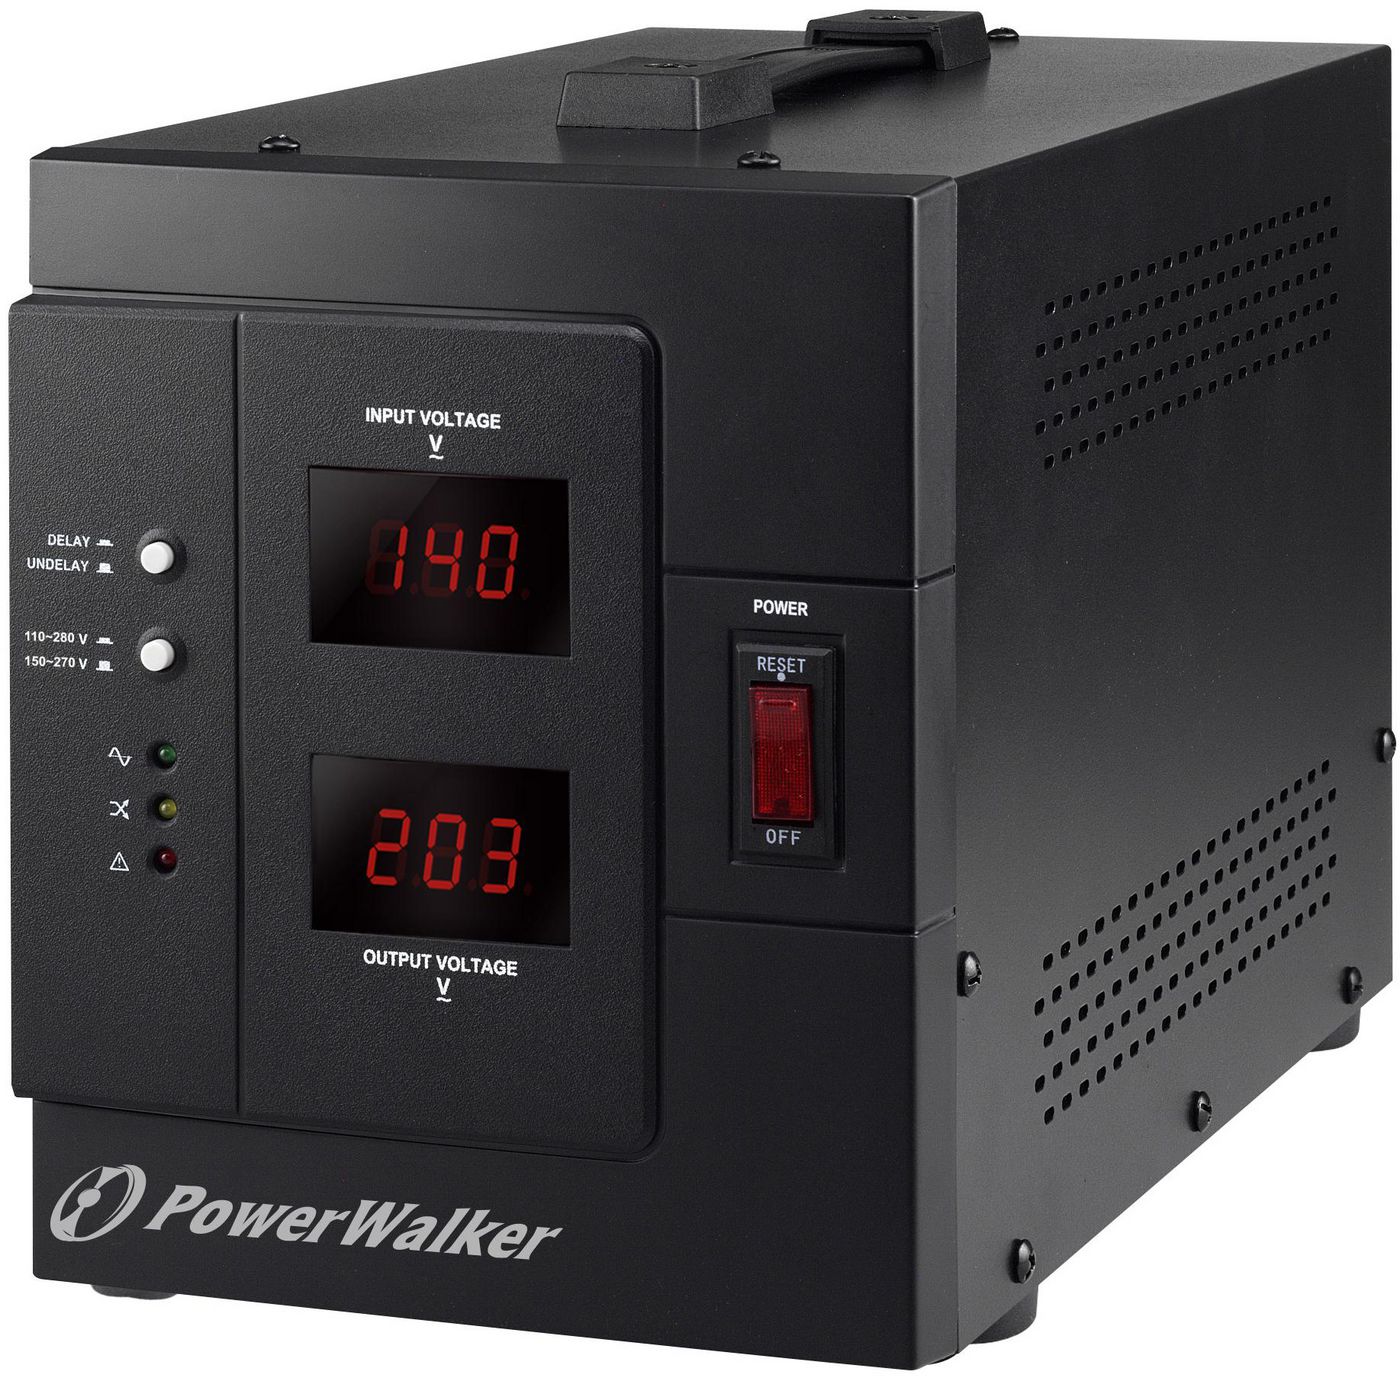 PowerWalker 10120307 AVR 3000SIV VoltageRegulator 